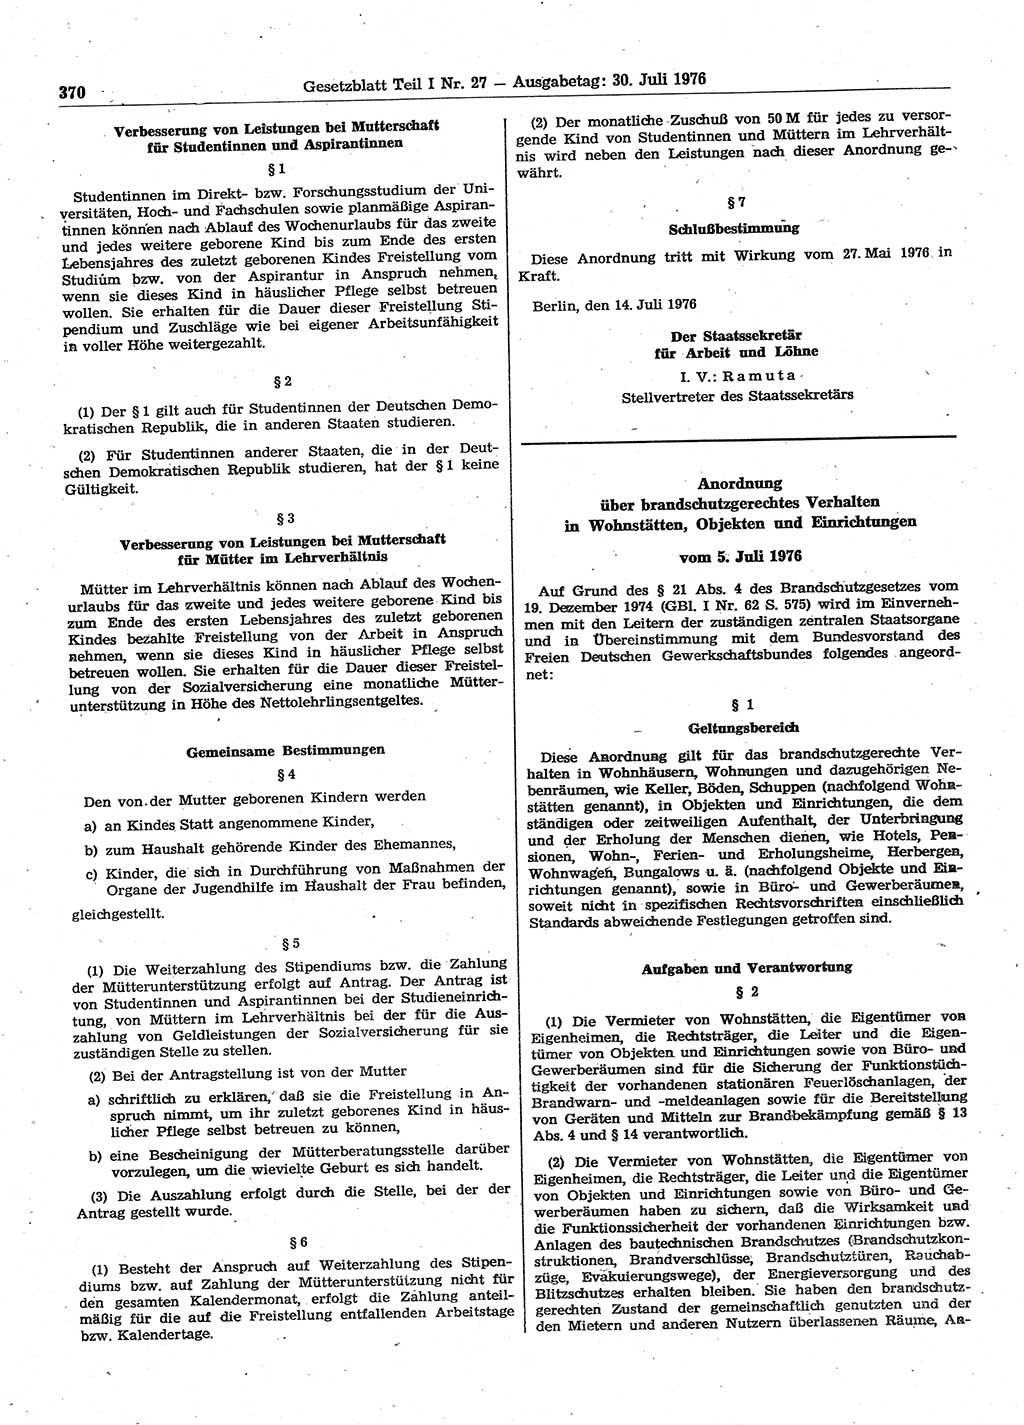 Gesetzblatt (GBl.) der Deutschen Demokratischen Republik (DDR) Teil Ⅰ 1976, Seite 370 (GBl. DDR Ⅰ 1976, S. 370)